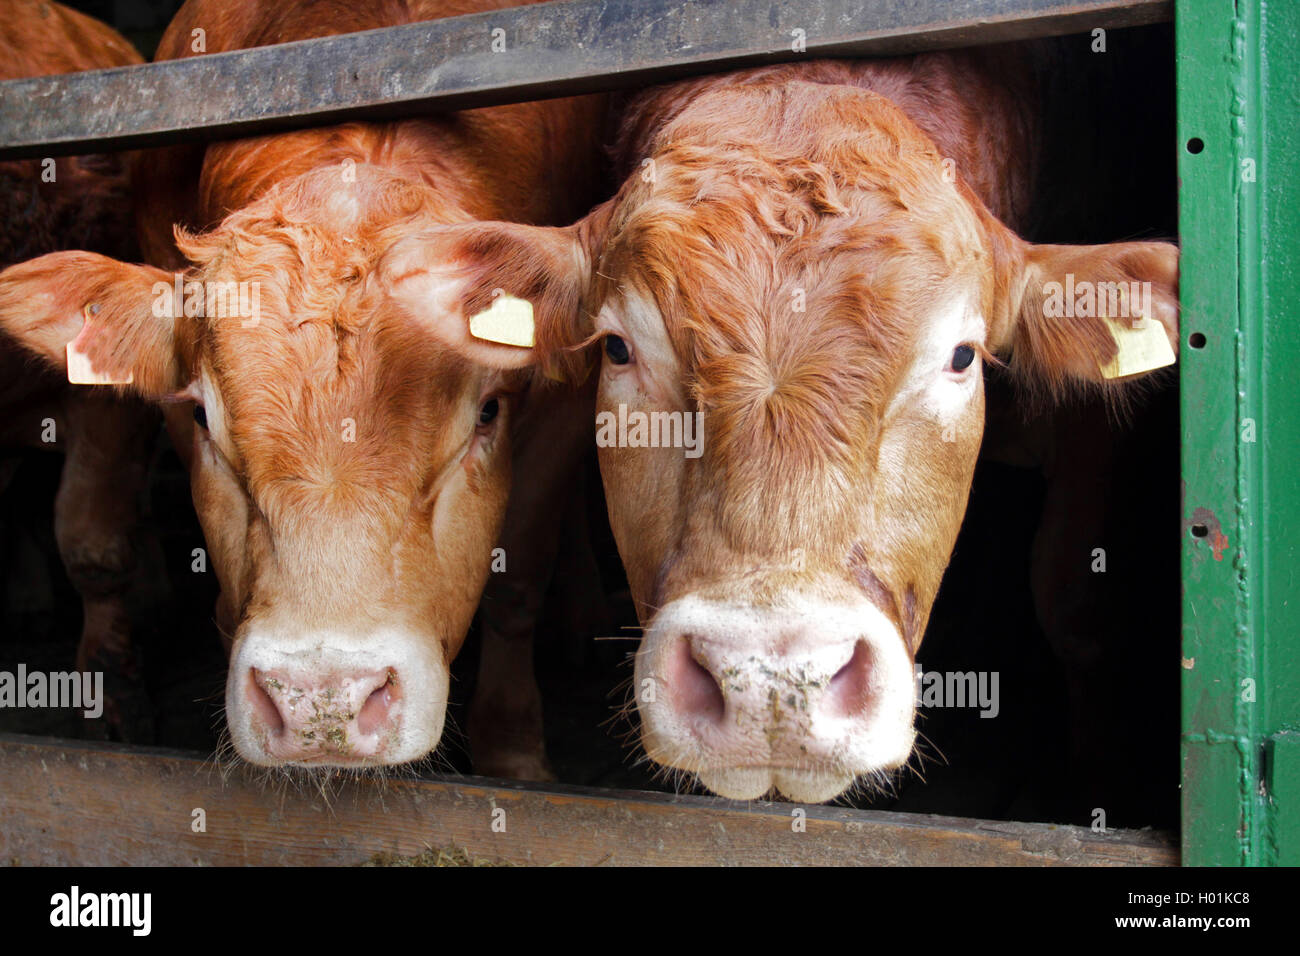 Limousin ganado bovino, ganado doméstico (Bos primigenius f. taurus), dos toros en el establo, vista frontal, Alemania Foto de stock